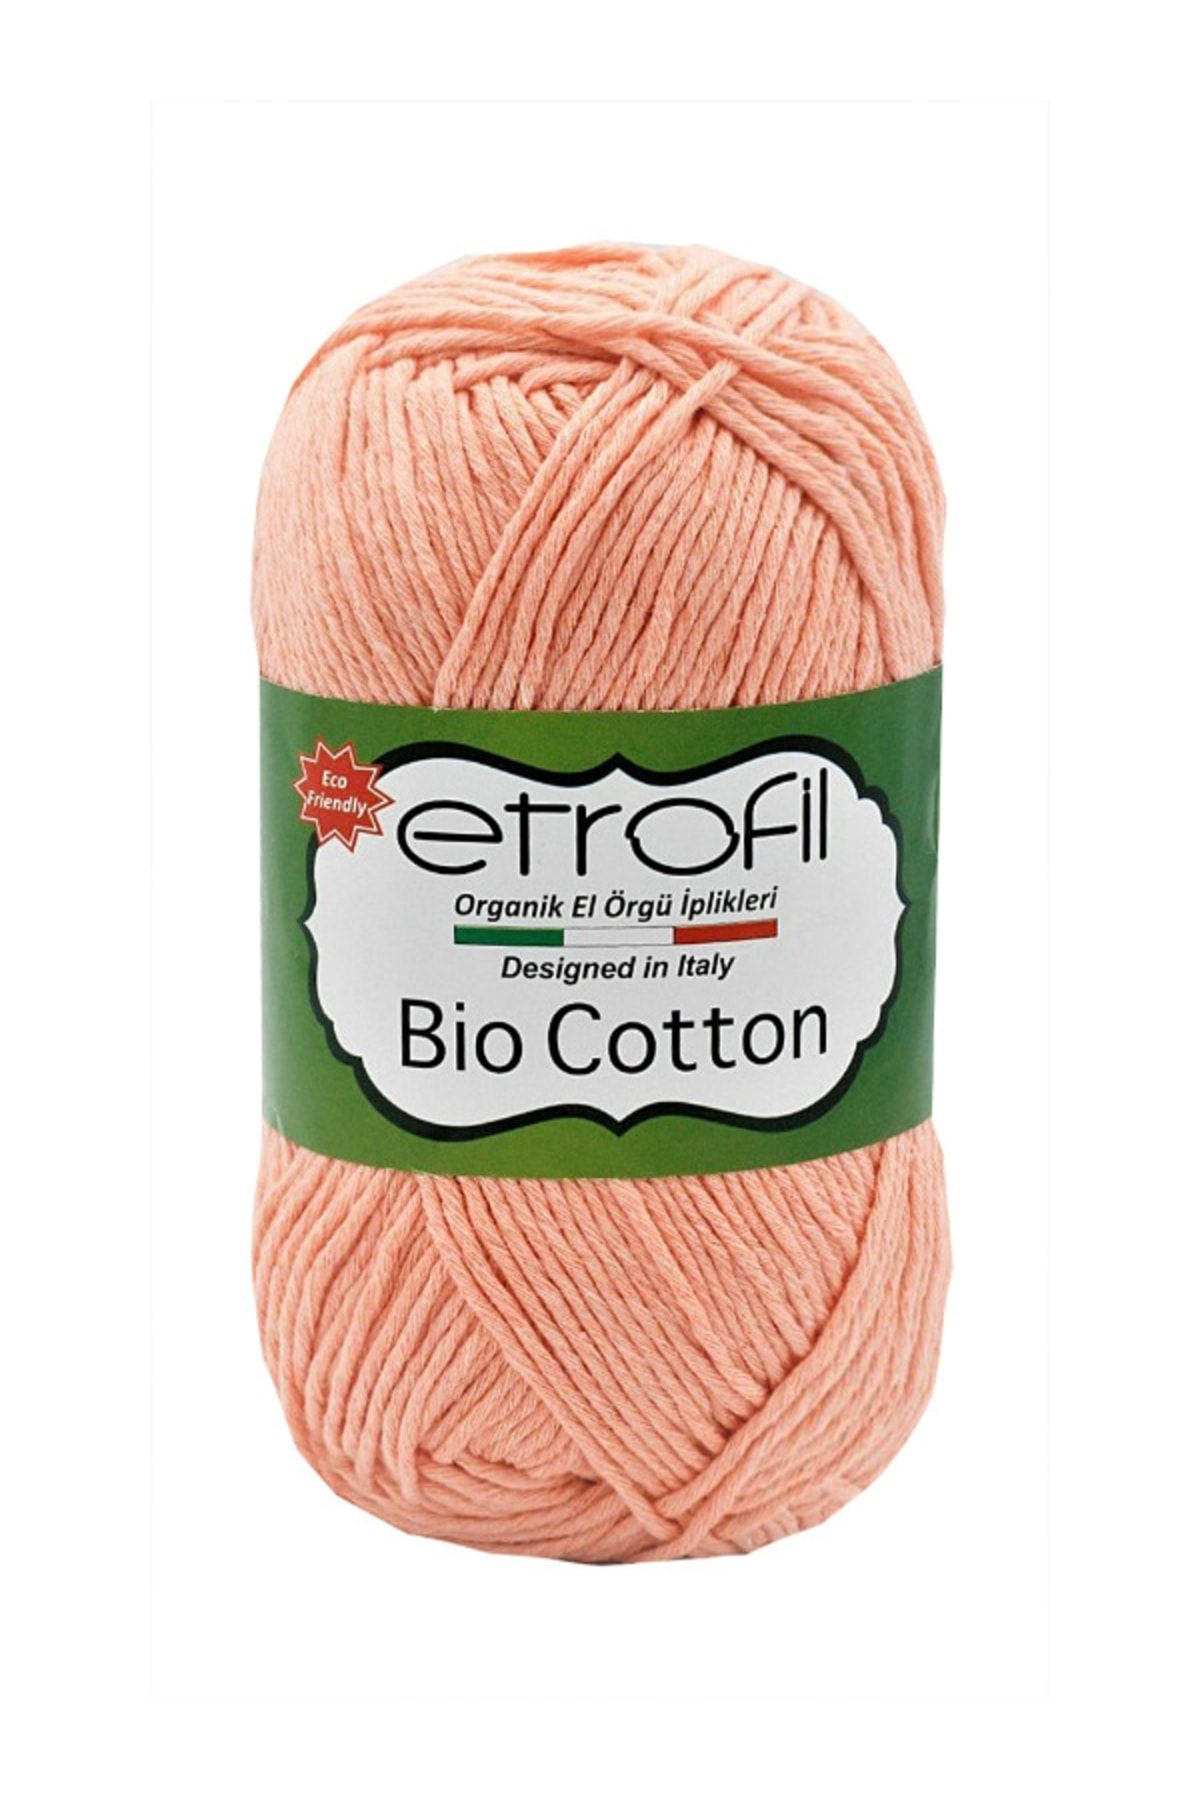 Etrofil Bıo Cotton